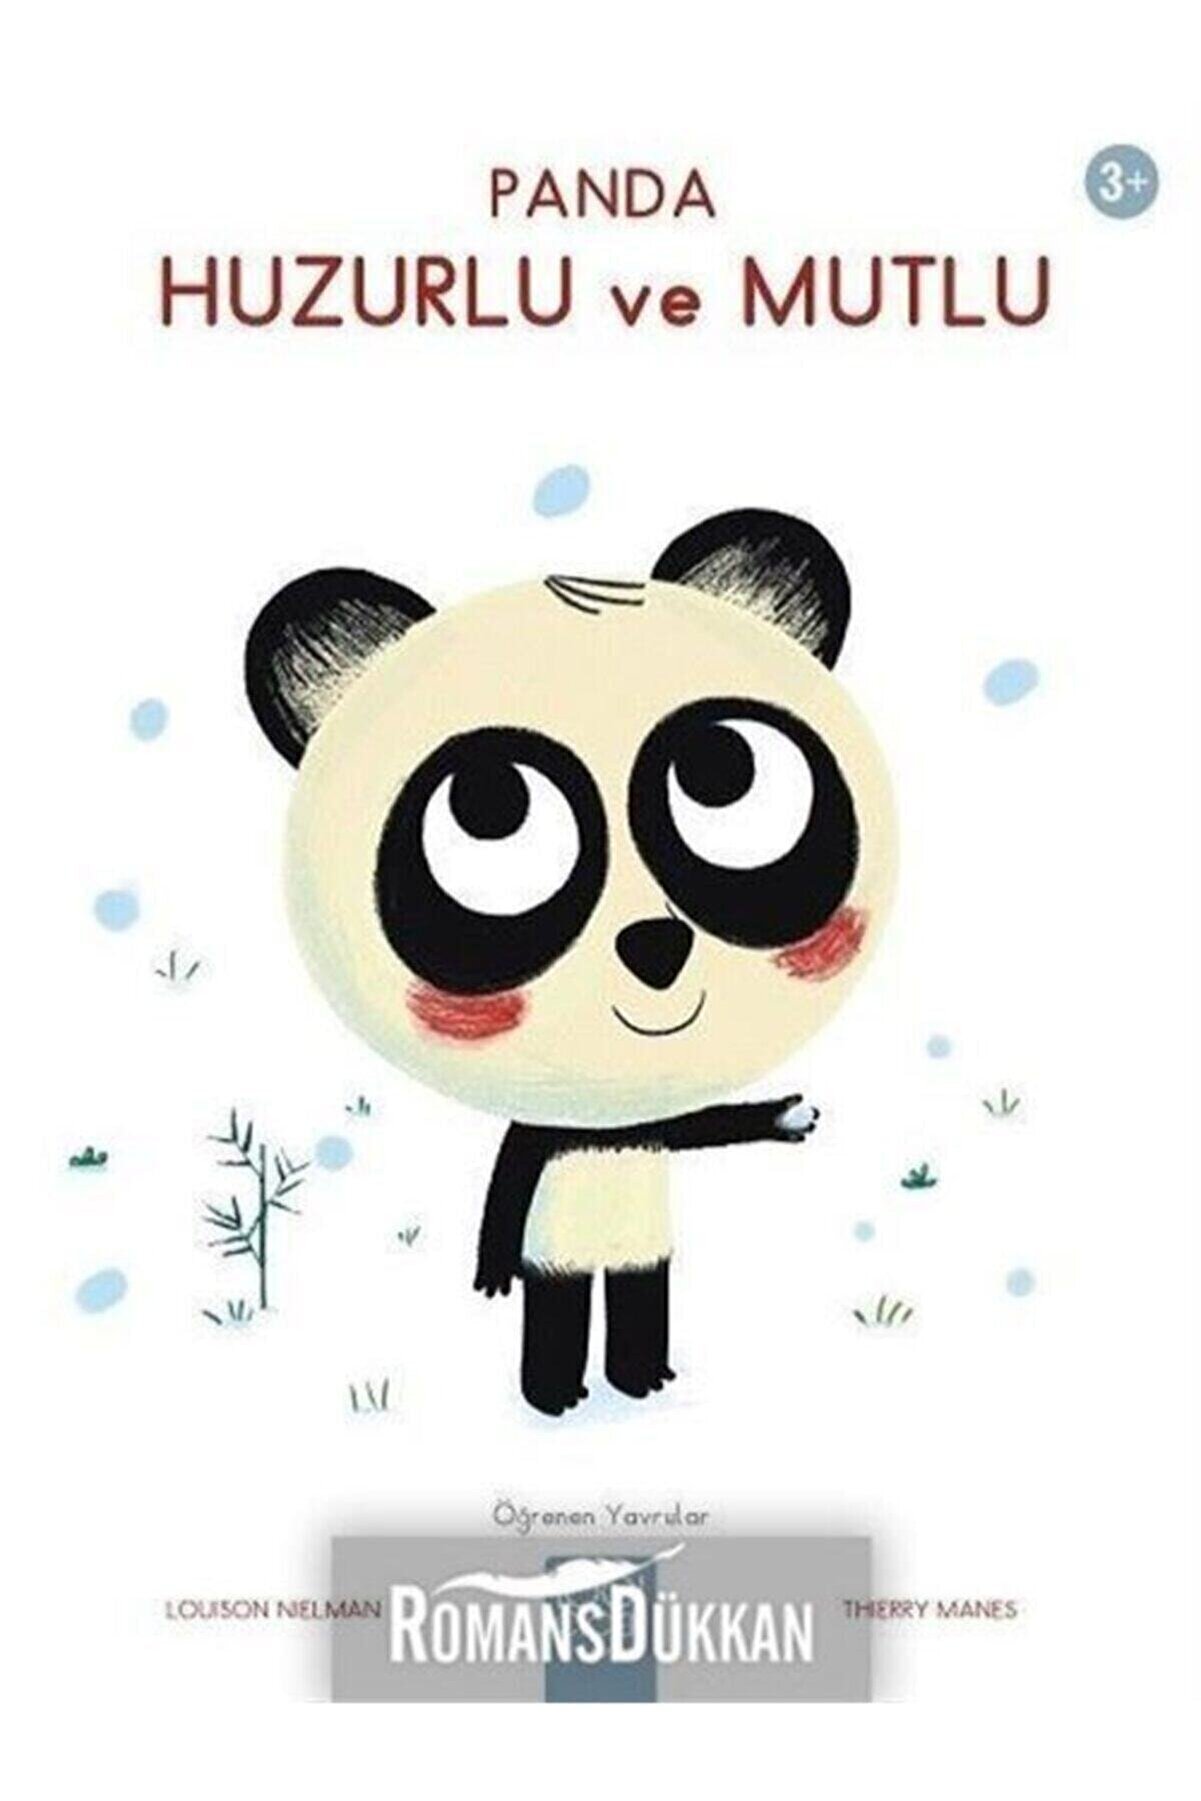 1001 Çiçek Kitaplar Panda Huzurlu Ve Mutlu-öğrenen Yavrular 3+